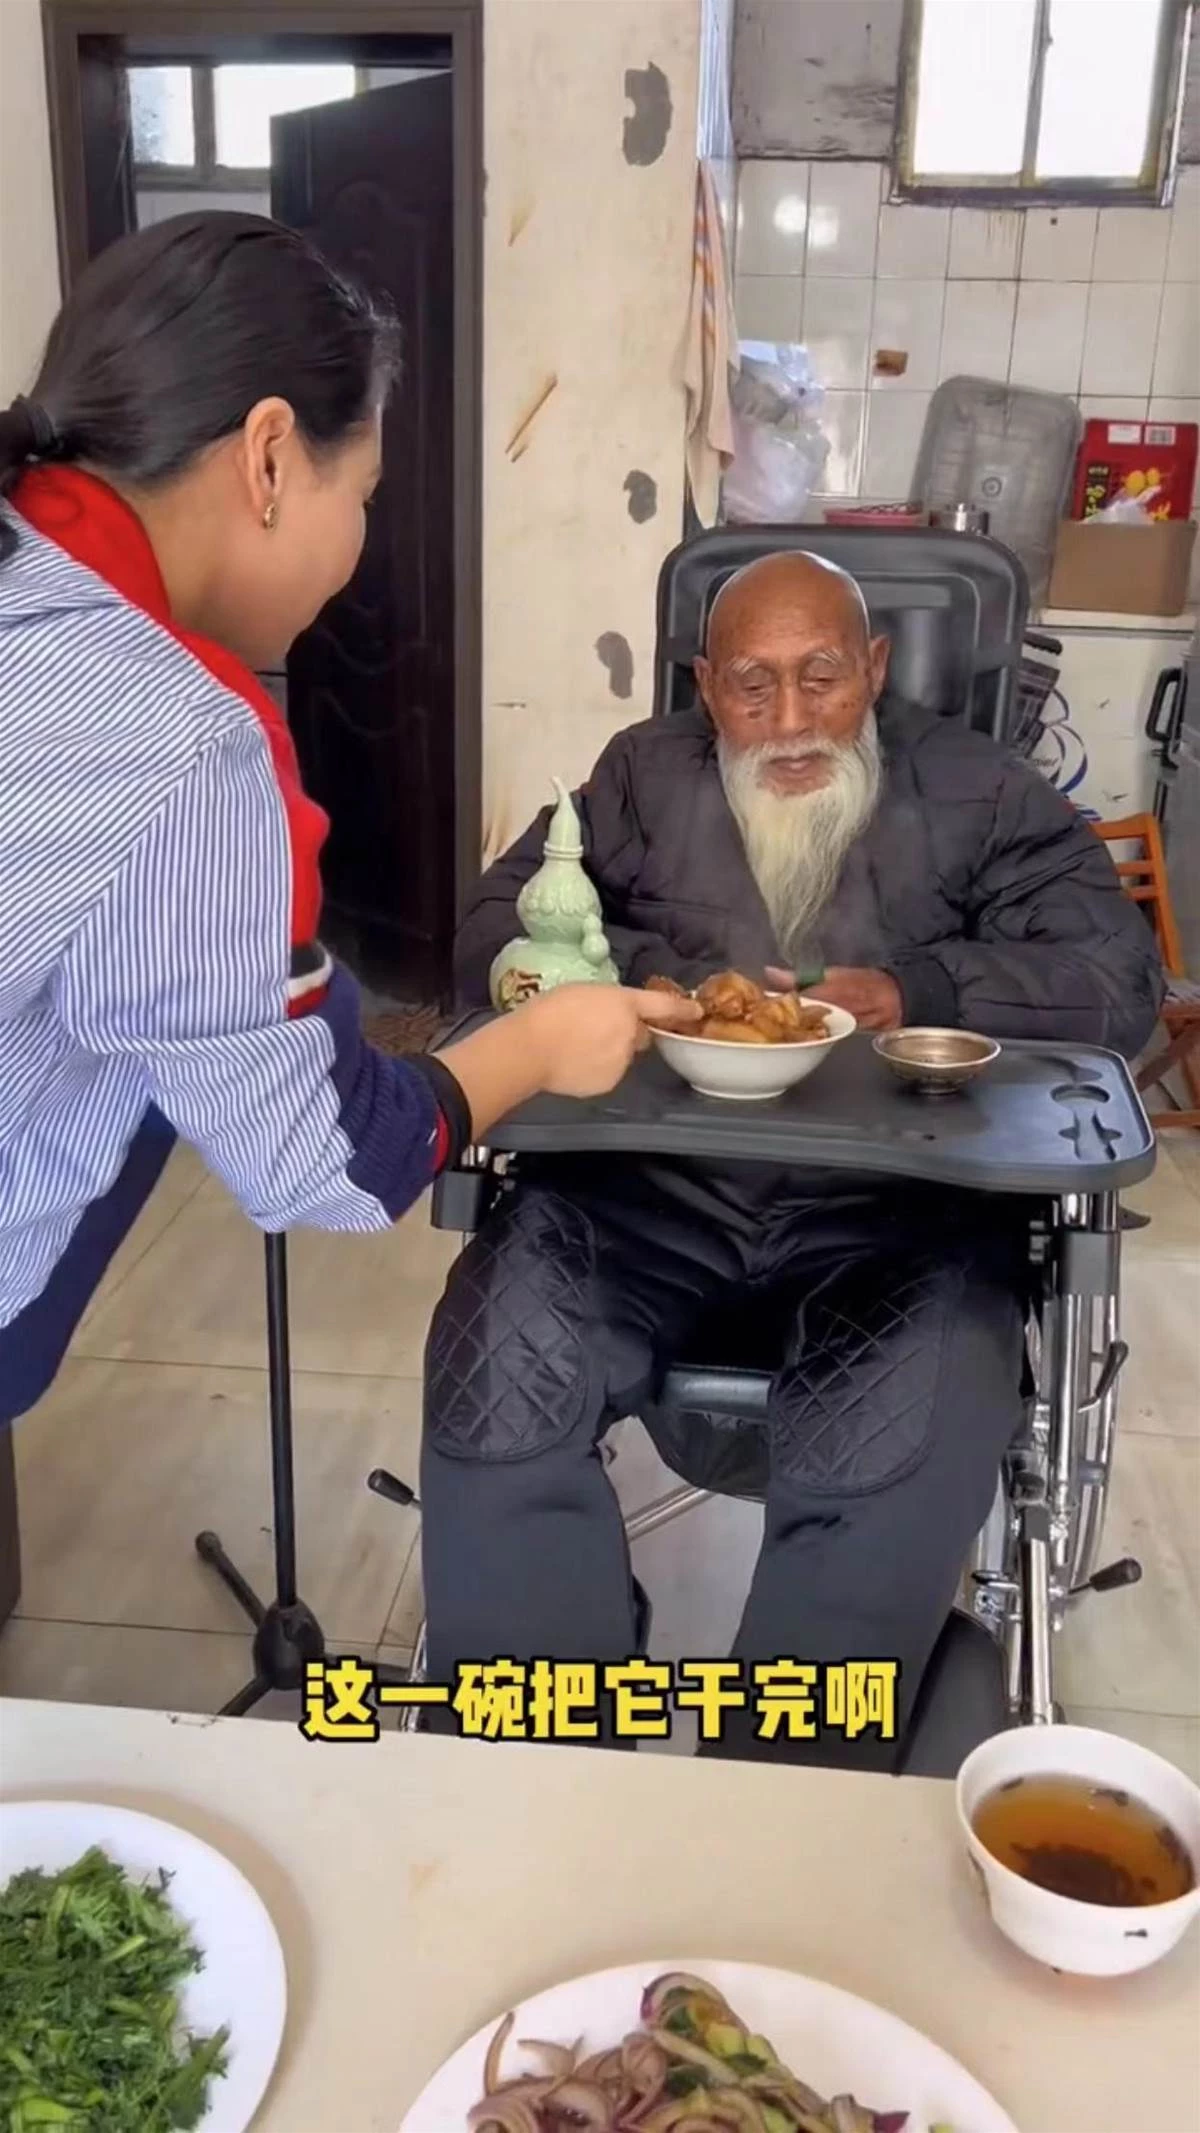 107歲阿公走紅！孫媳婦端肉上桌，他咧嘴笑超開心「就愛吃肉！」；網淚目「老人家的快樂這麼簡單」